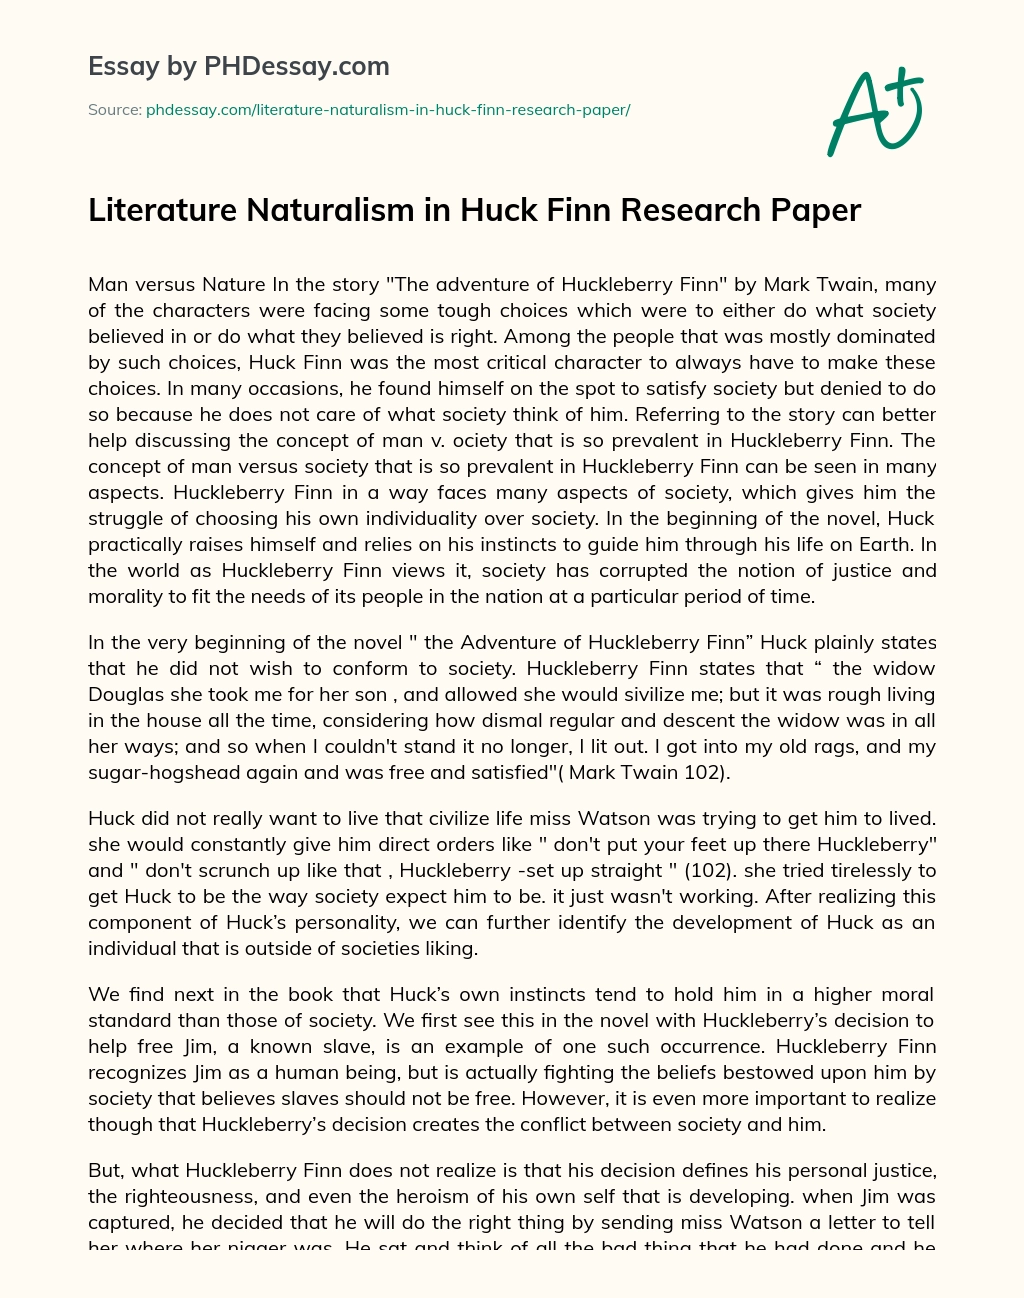 Literature Naturalism in Huck Finn Research Paper